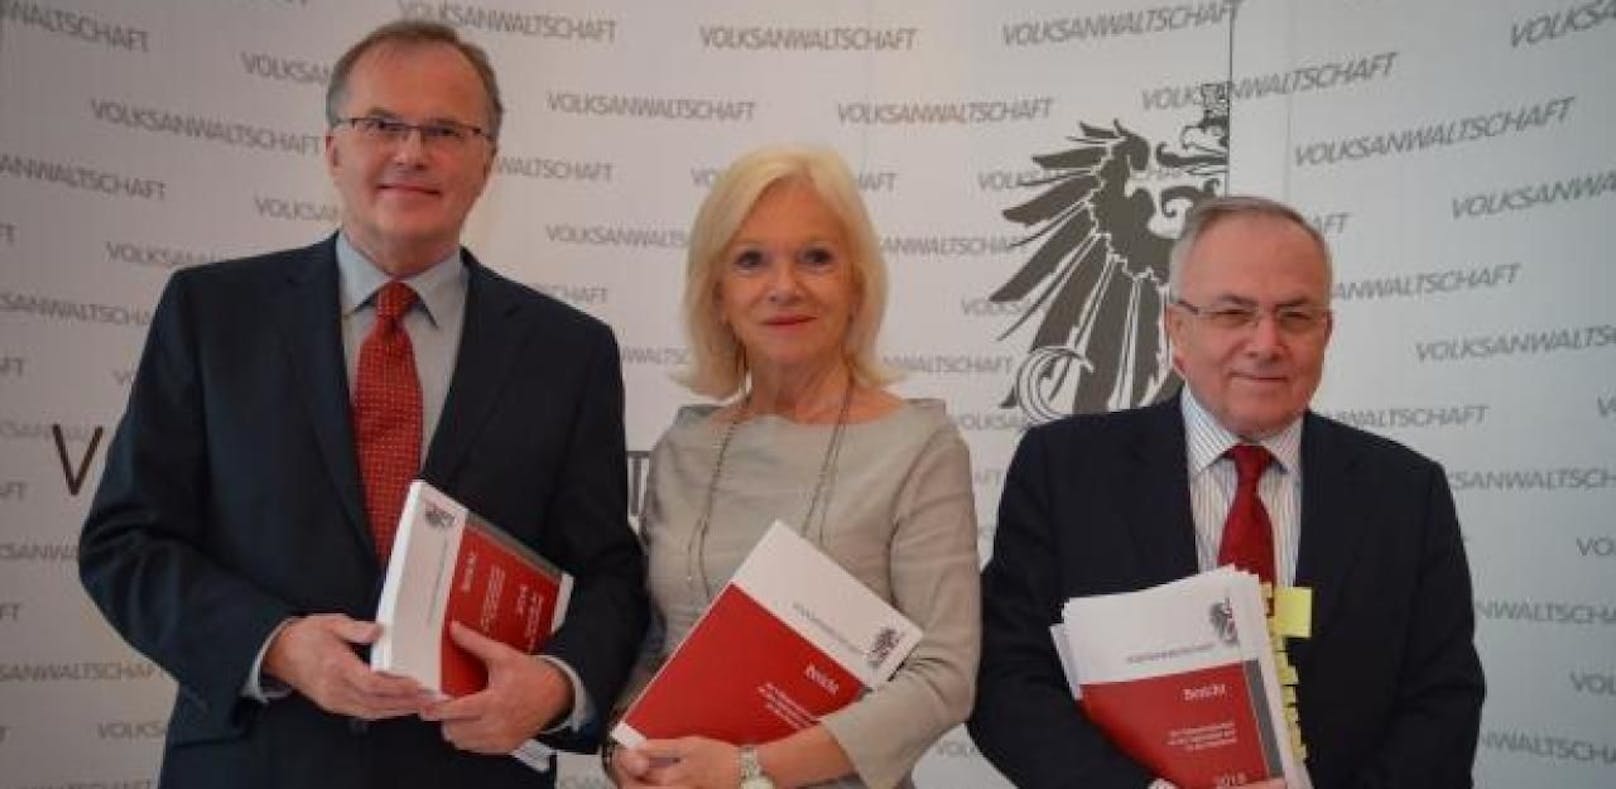 Günther Kräuter, Gertrude Brinek und Peter Fichtenbauer bilden aktuell die Volksanwaltschaft.